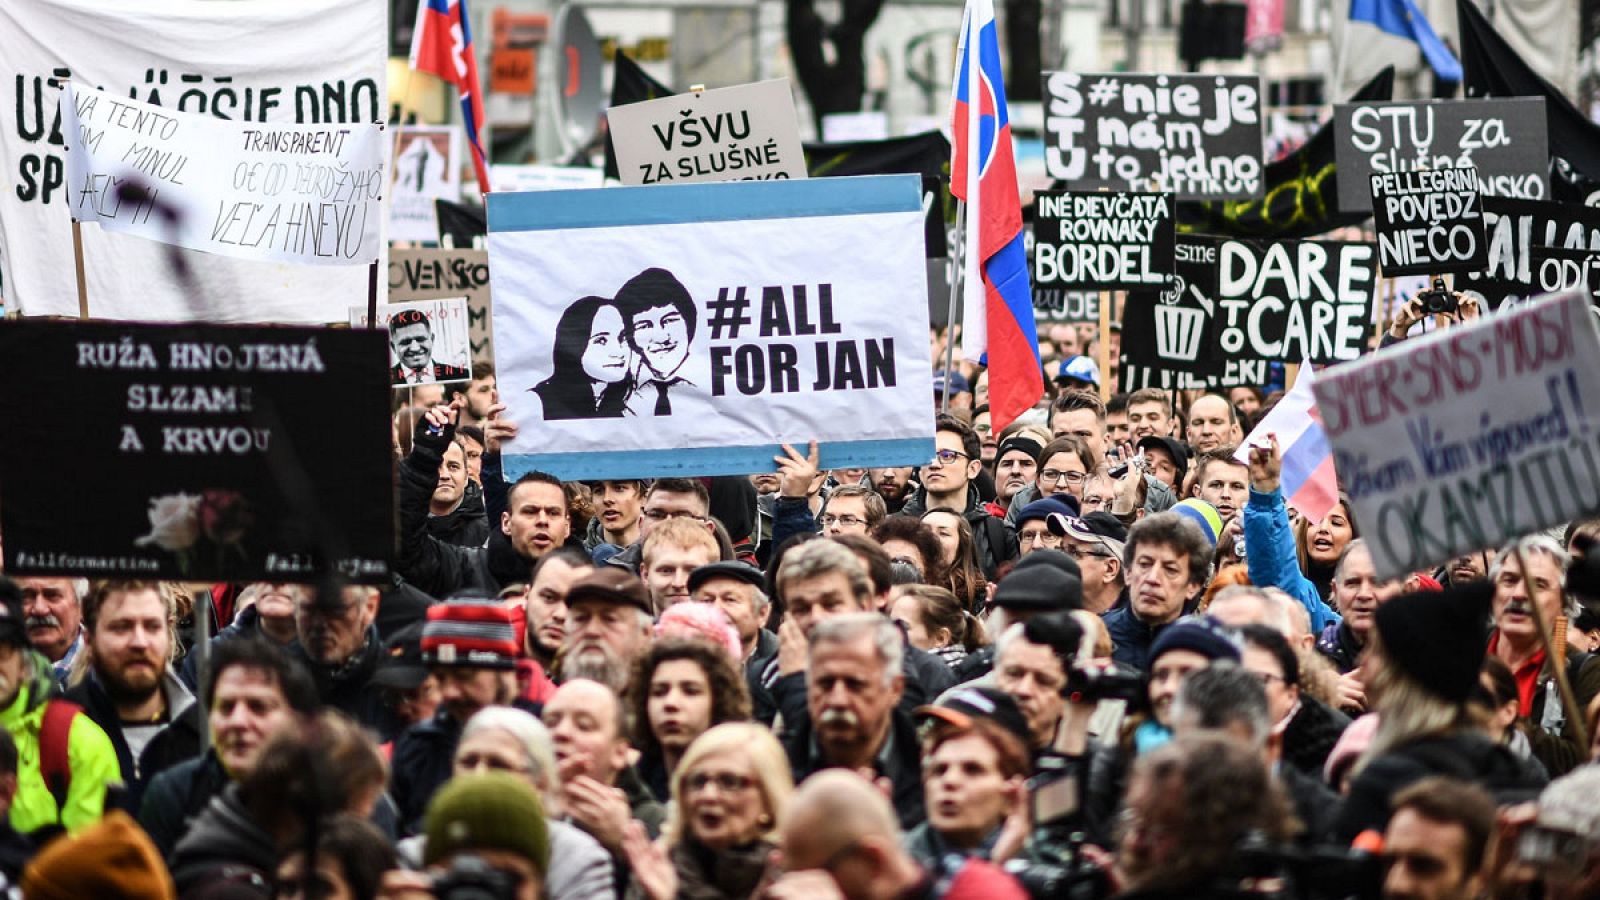 Vista de la manifestación multitudinaria en memoria del periodista de investigación asesinado Jan Kuciak, bajo el lema "Defendamos la decencia en Eslovaquia" contra el gobierno del país en Bratislava, Eslovaquia.